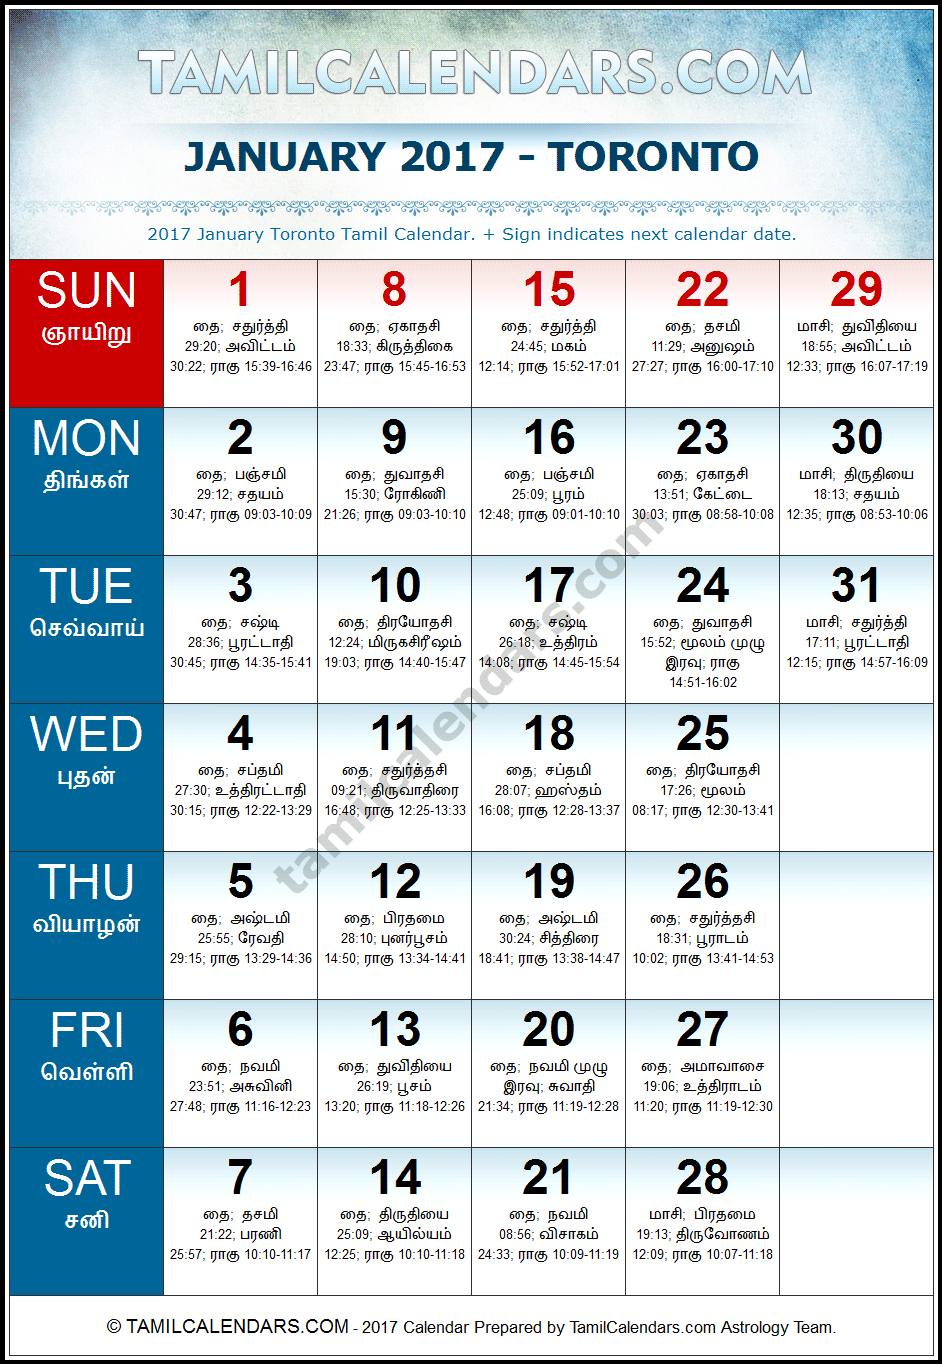 January 2017 Tamil Calendar for Toronto, Canada